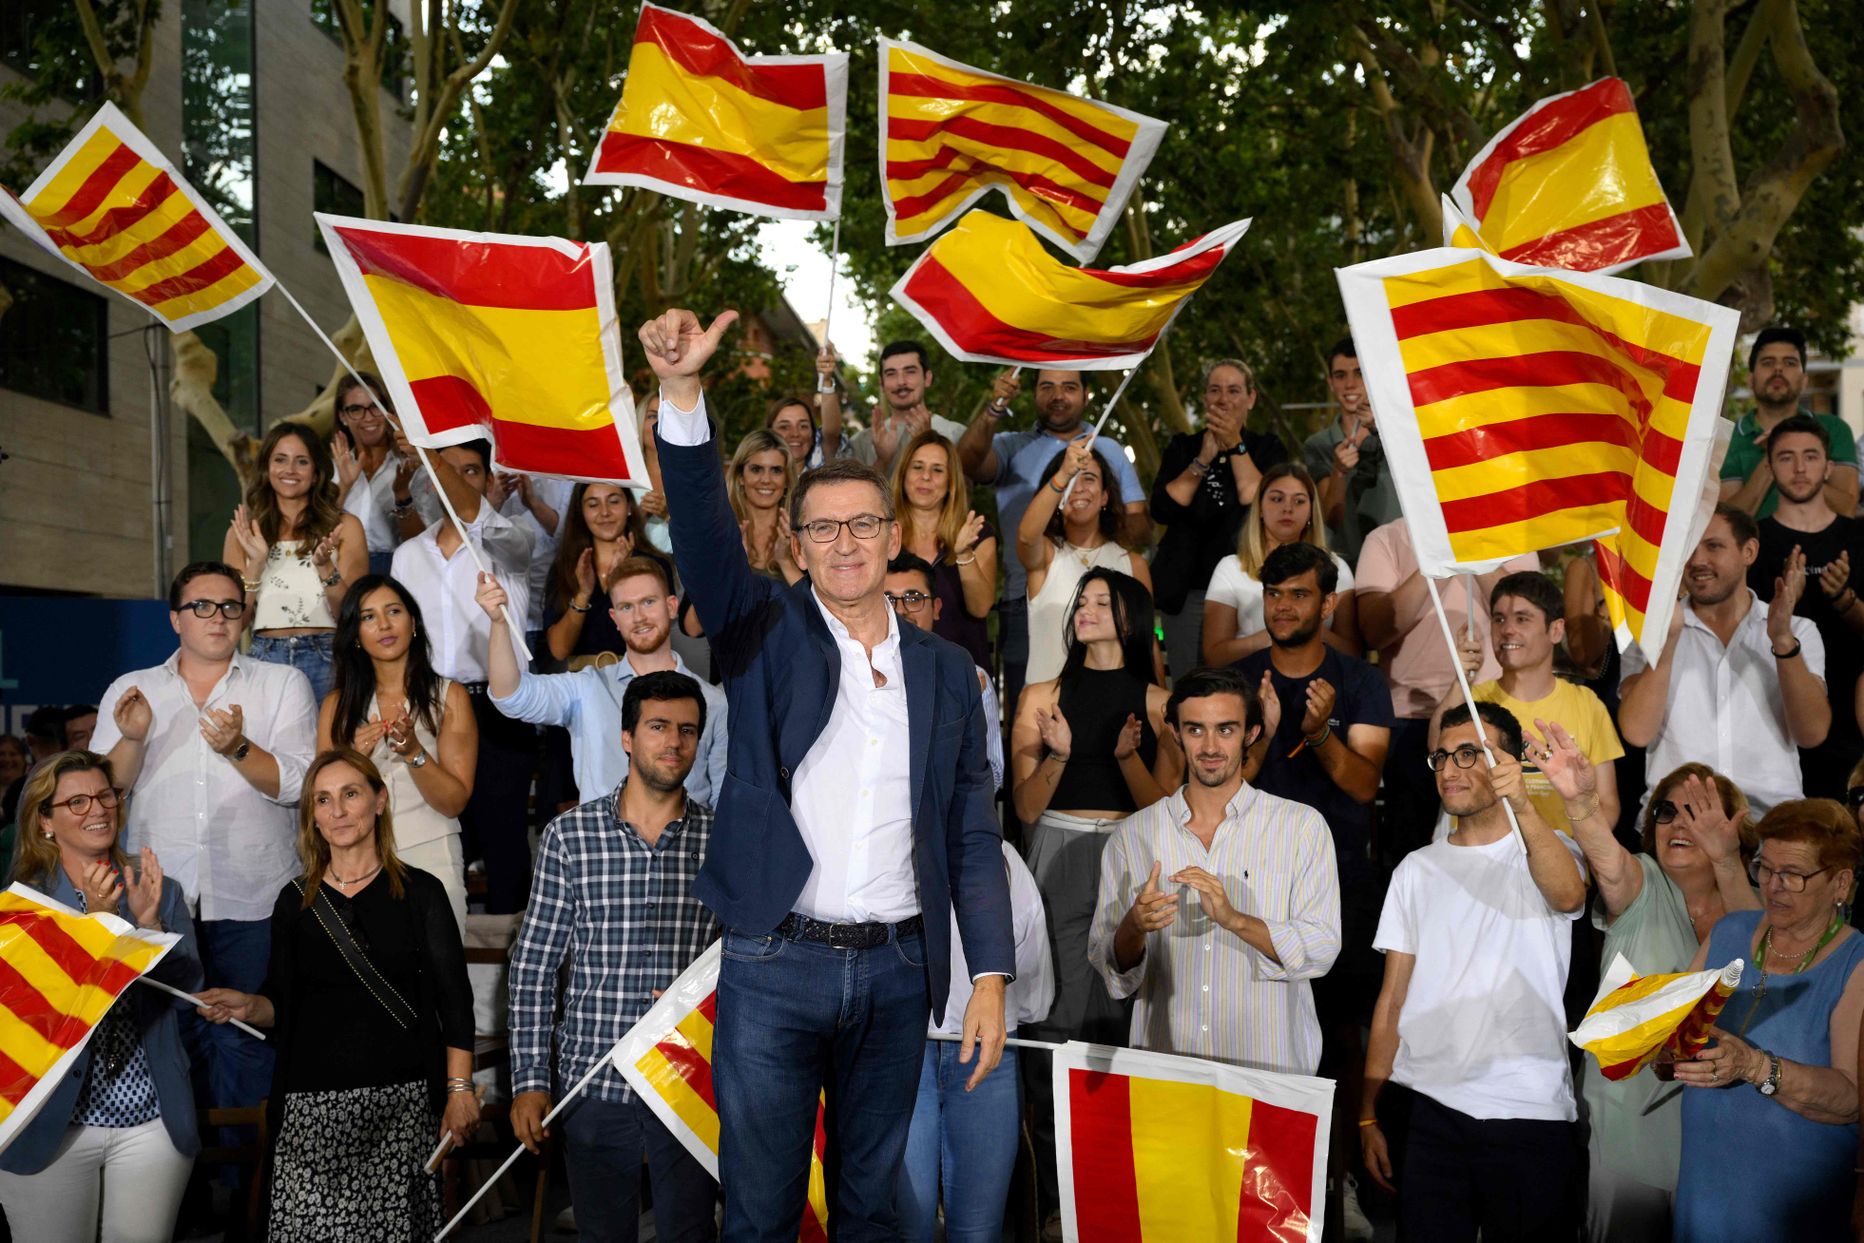 Hispaania konservatiivide liider Alberto Núñez Feijóo hiljuti kampaaniaüritusel Kataloonia pealinnas Barcelonas. Ta on küll sõnades otsinud katalaanidega lepitust, kuid partei poliitika hoiab jätkuvalt separatistlikult meelestatud poliitikute suhtes sallimatut joont.